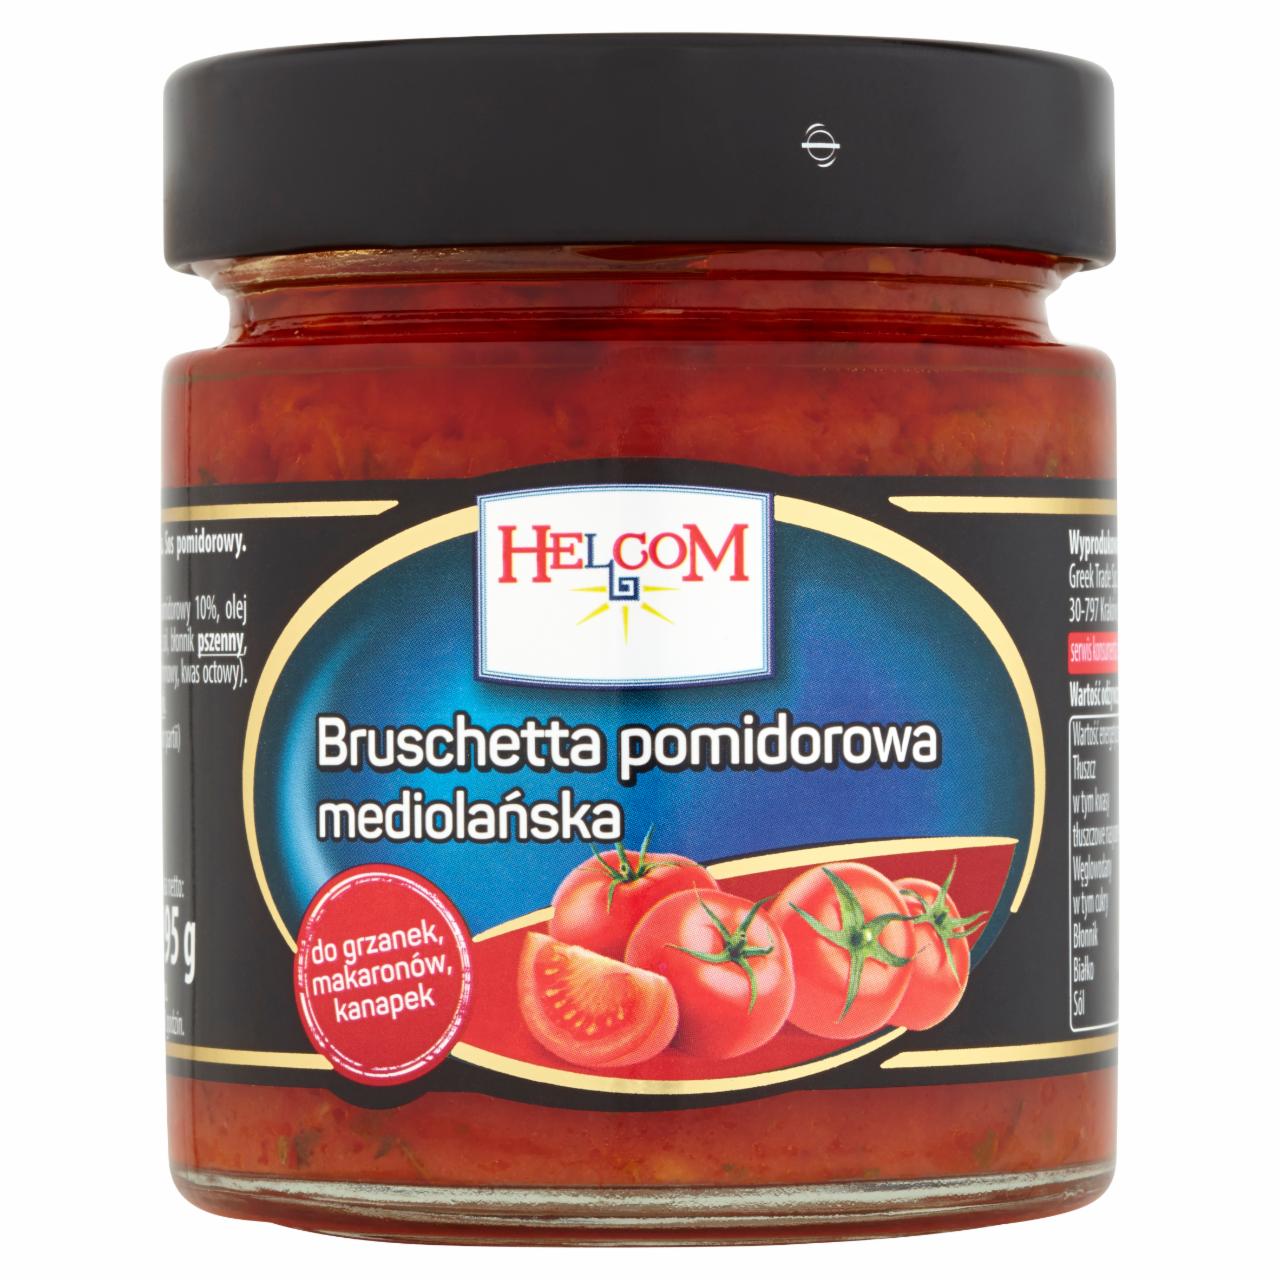 Zdjęcia - Helcom Bruschetta pomidorowa mediolańska 195 g